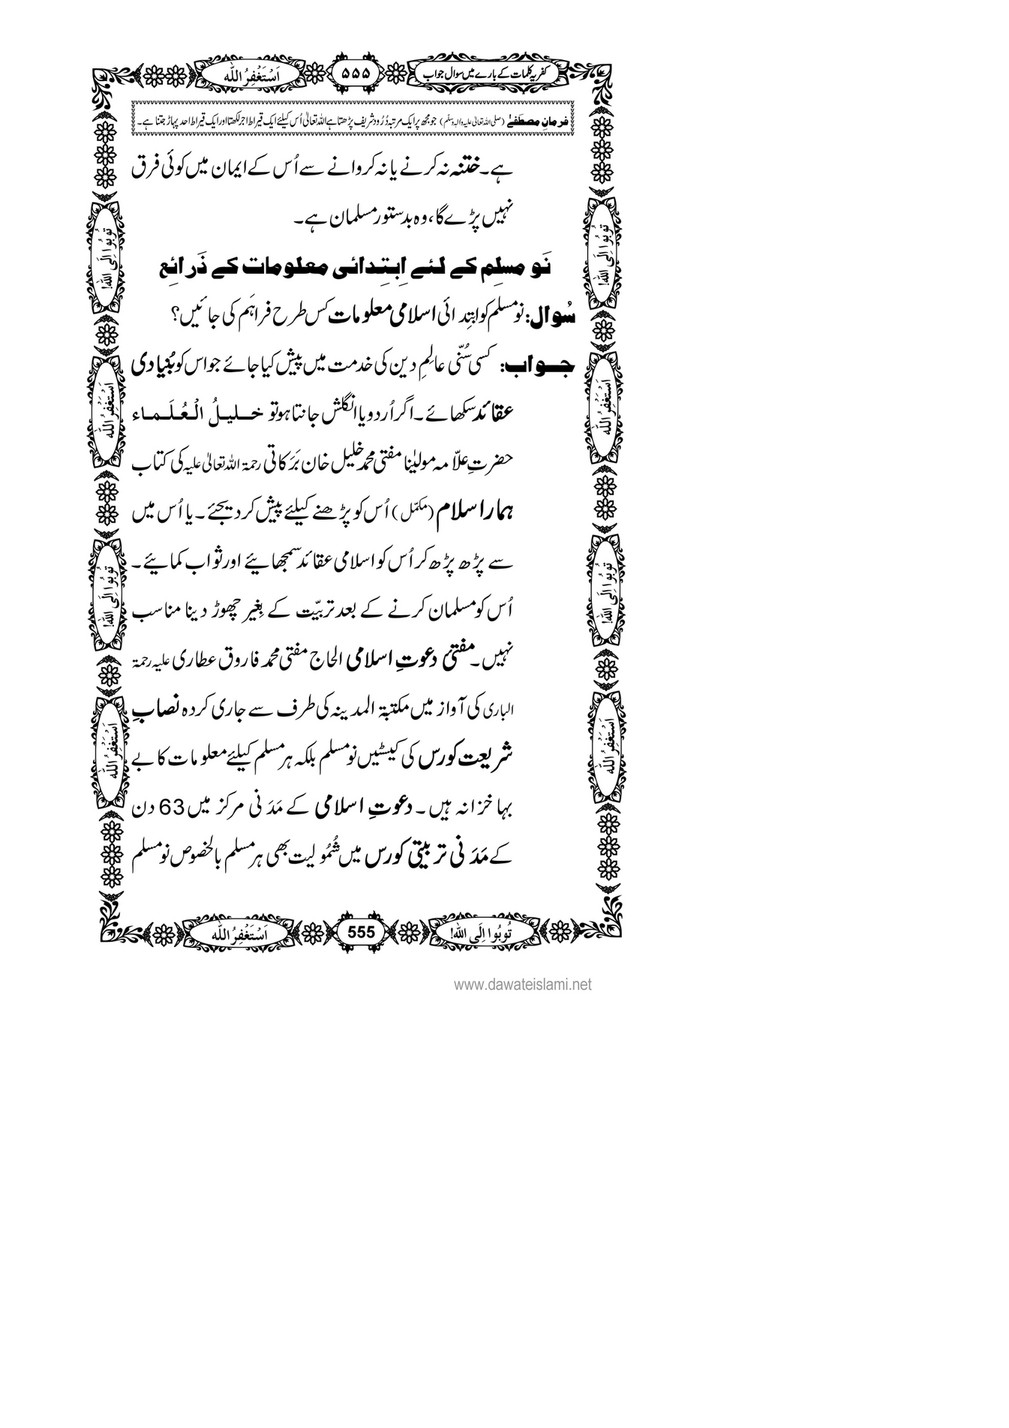 My Publications Kufriya Kalmaat Kay Baray Main Sawal Jawab Page 574 575 Created With Publitas Com